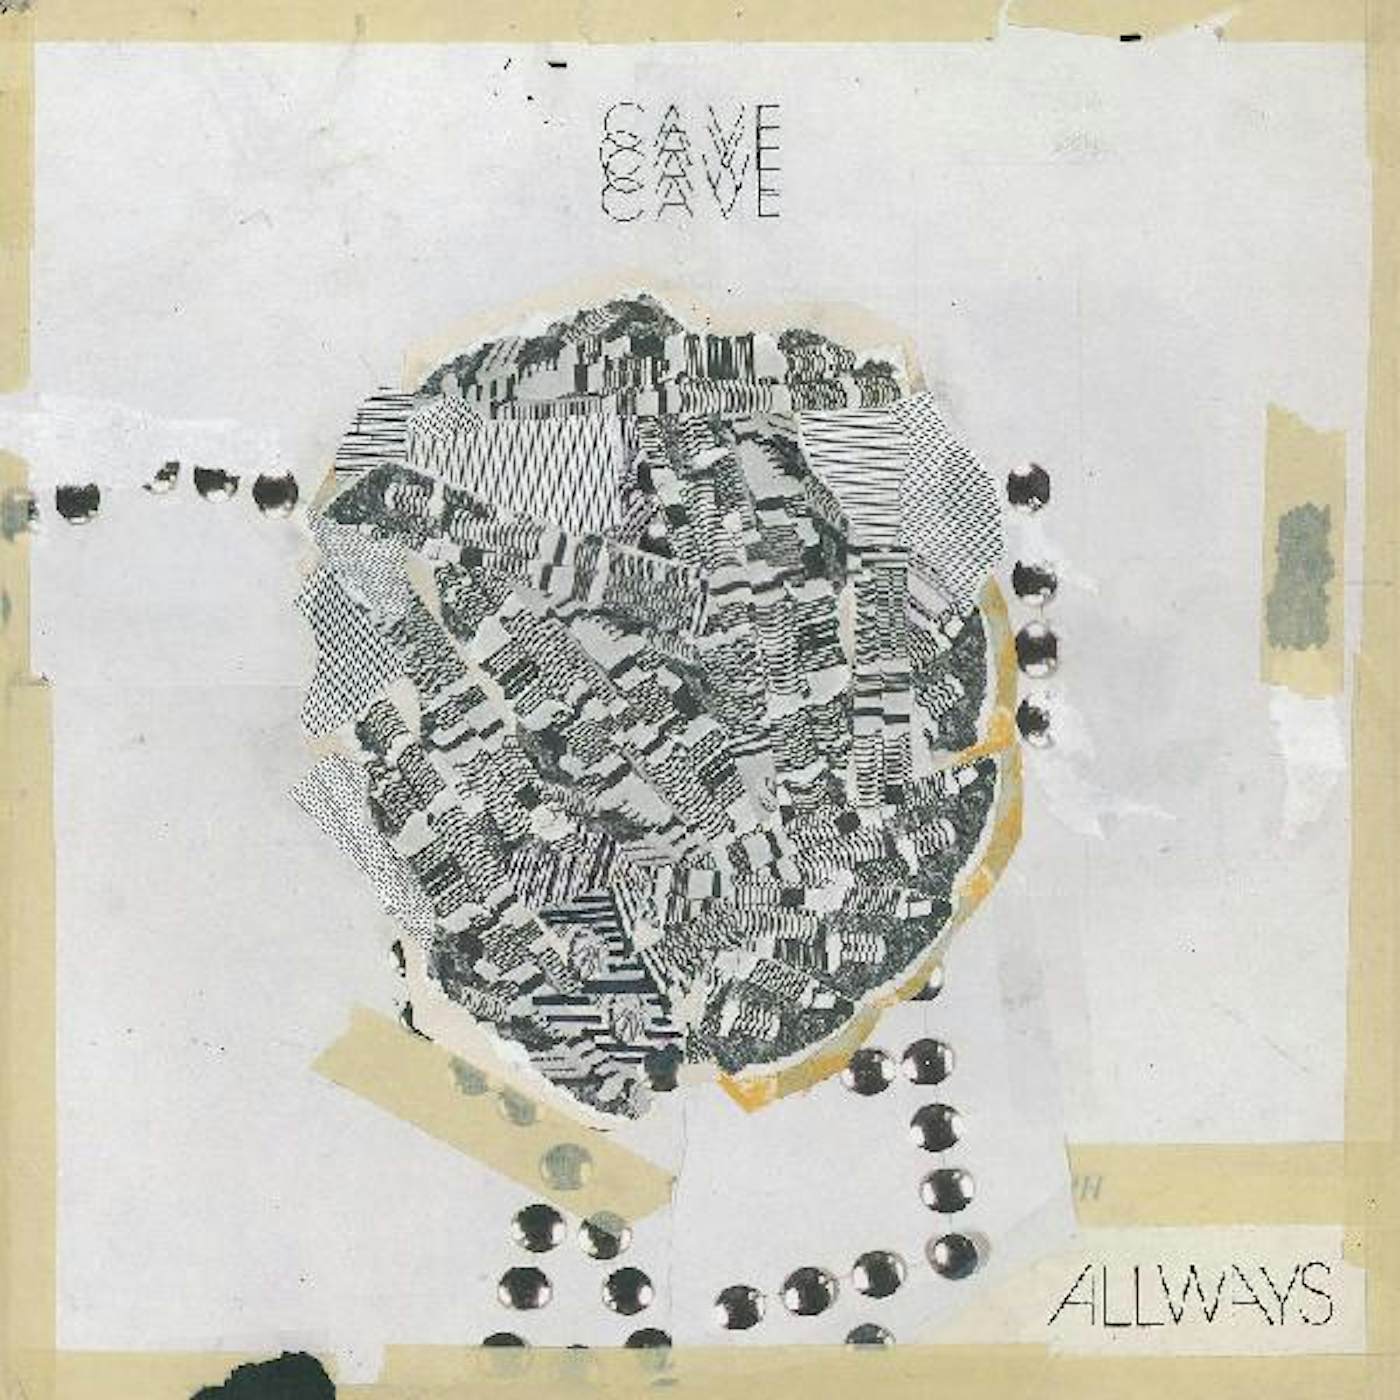 Cave Allways Vinyl Record